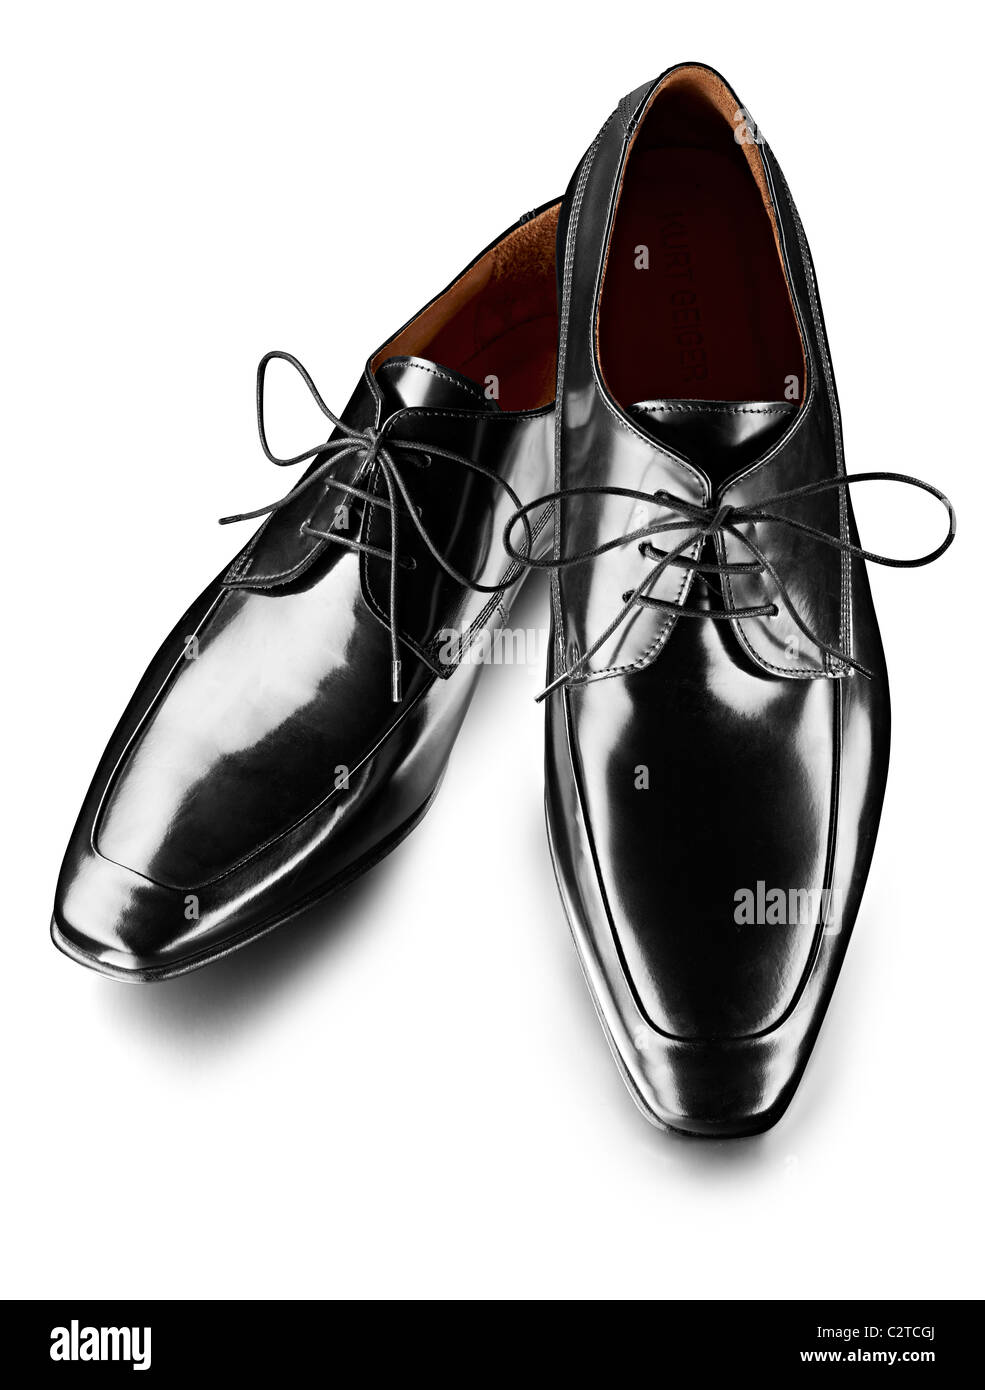 Mens chaussures en cuir verni noir Banque D'Images